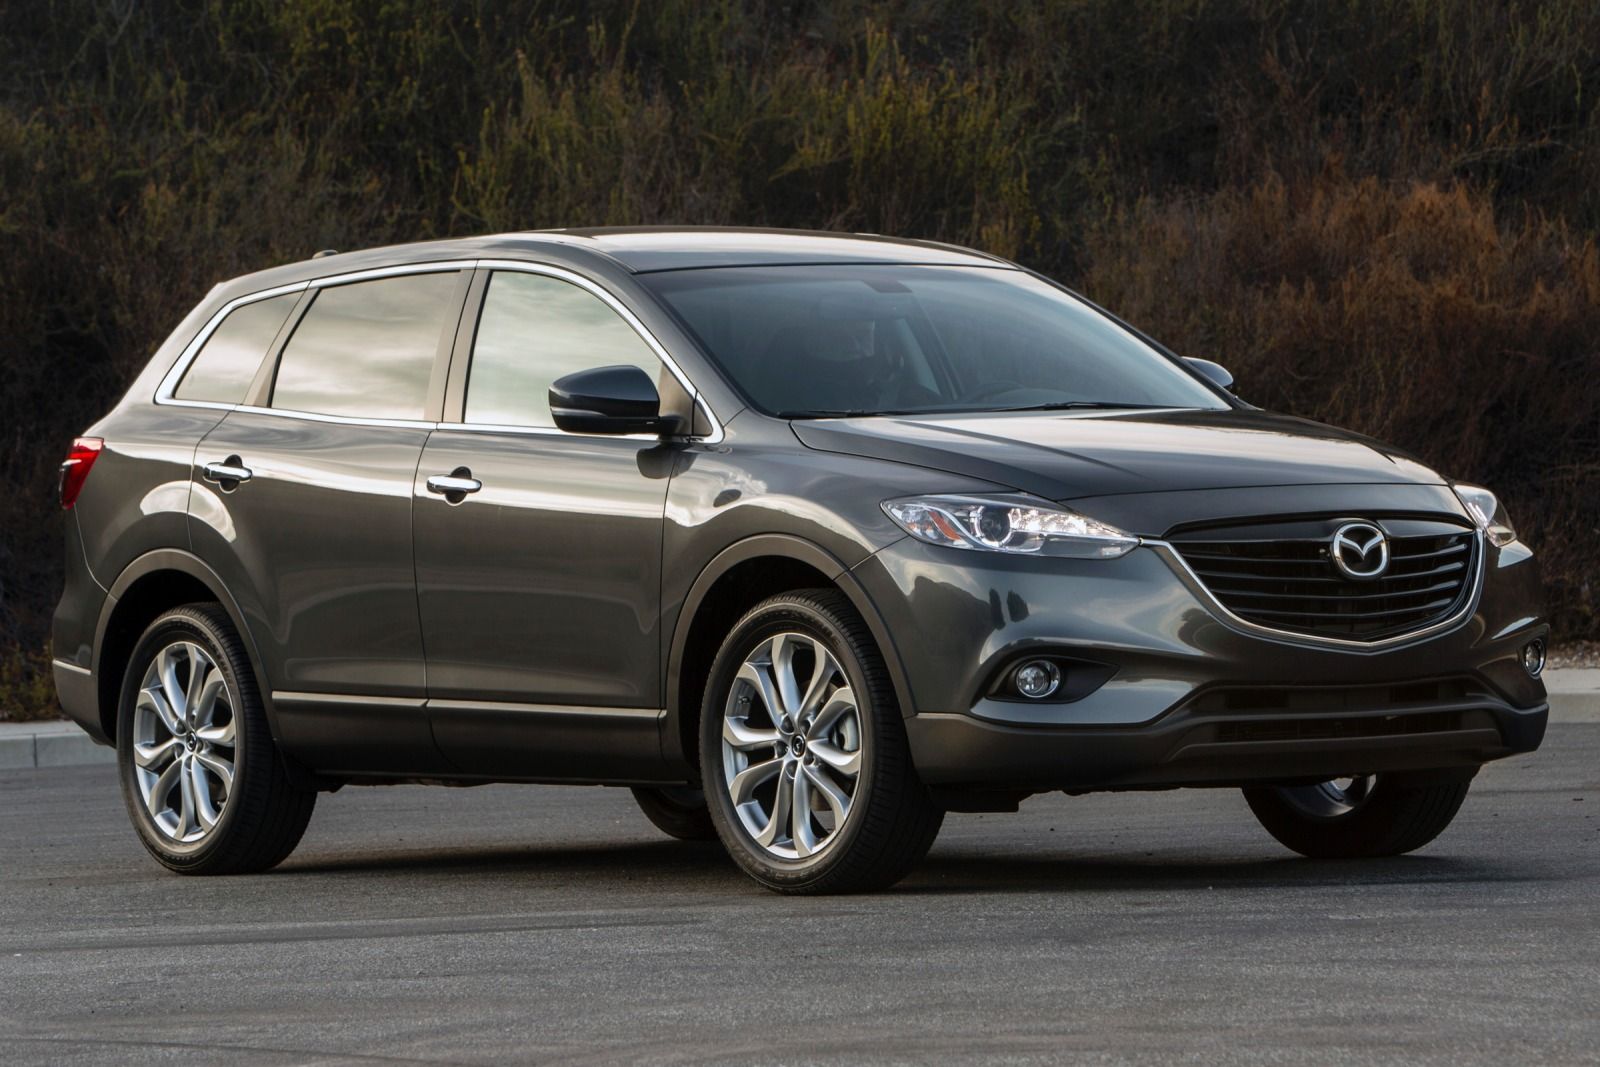 Mazda CX-9 2015 toát lên phong cách sang trọng và lịch lãm